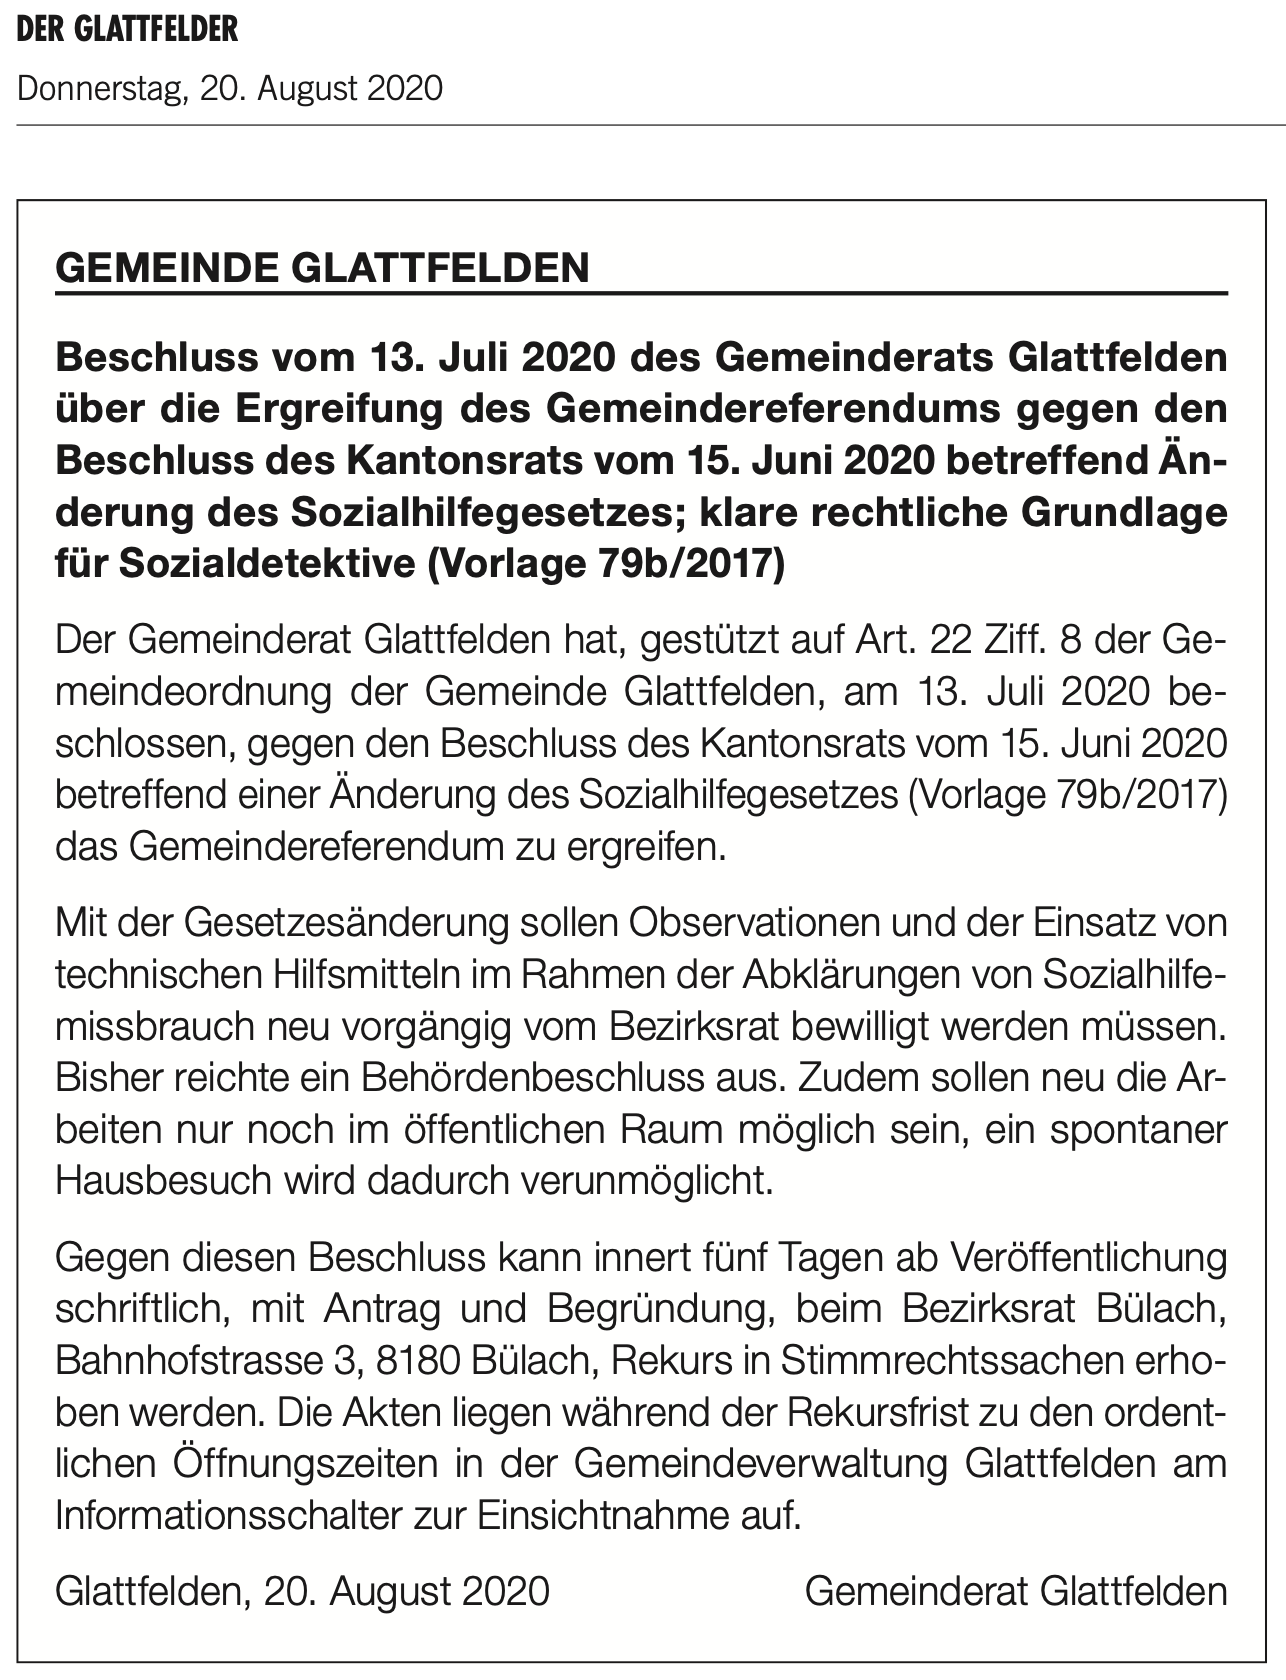 Glattfelden unterstützt Gemeindereferendum